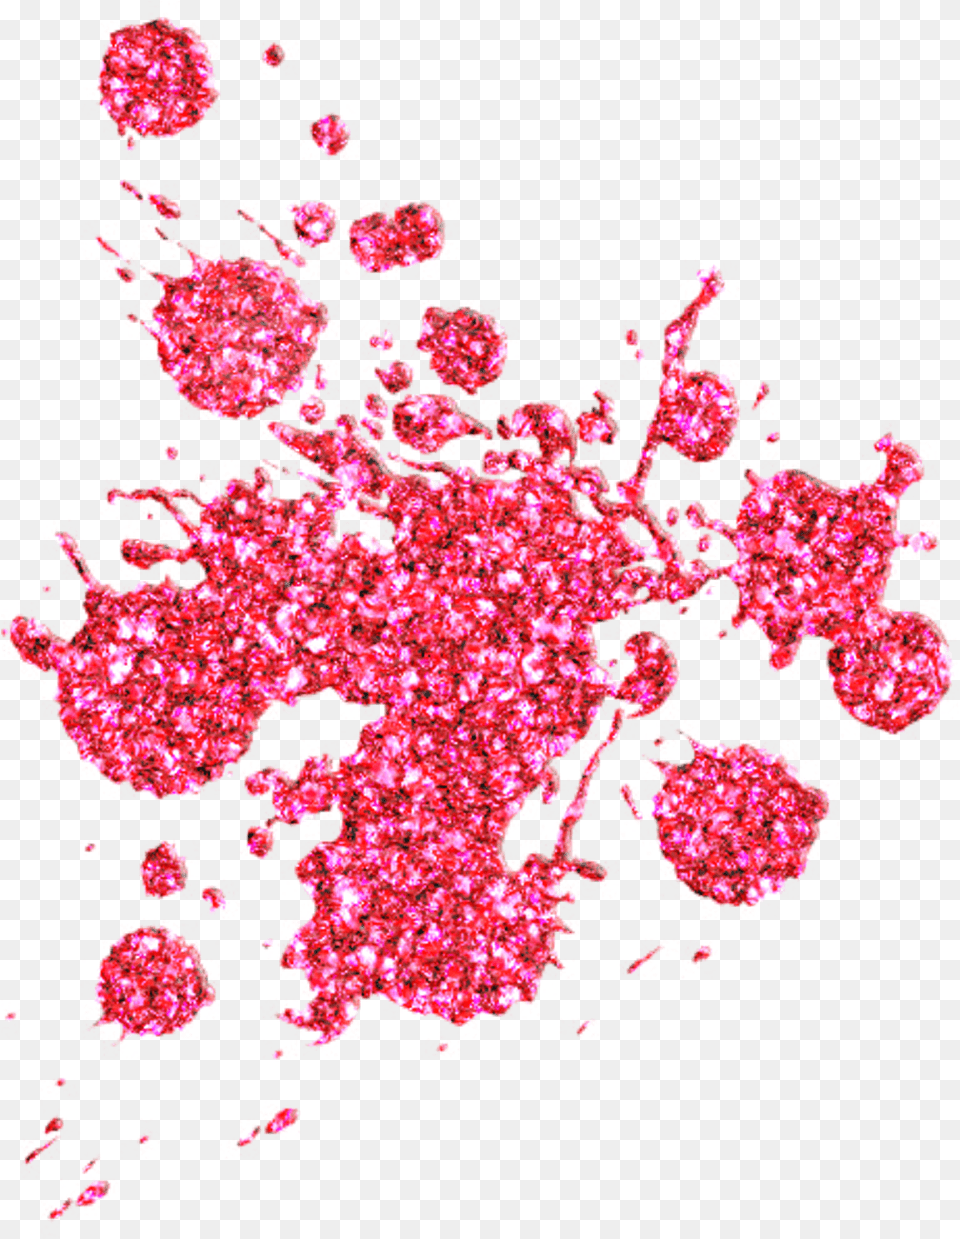 Download Hd Red Sparkle Pink Glitter Splats, Pattern, Art, Floral Design, Graphics Png